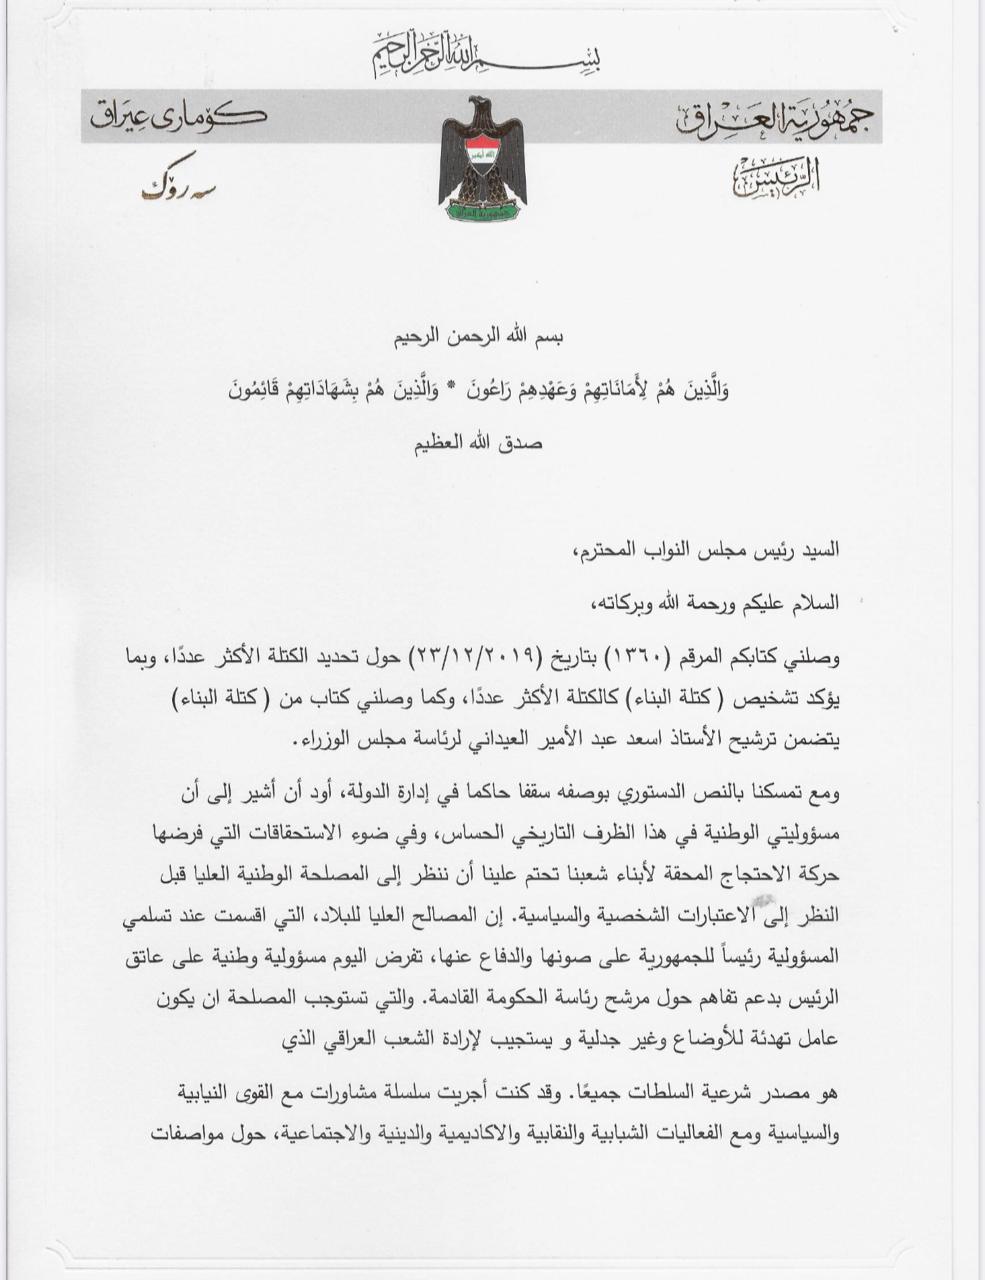 بالوثائق : نص رسالة رئيس الجمهورية الى الحلبوسي بشأن تكليف رئيس الوزراء